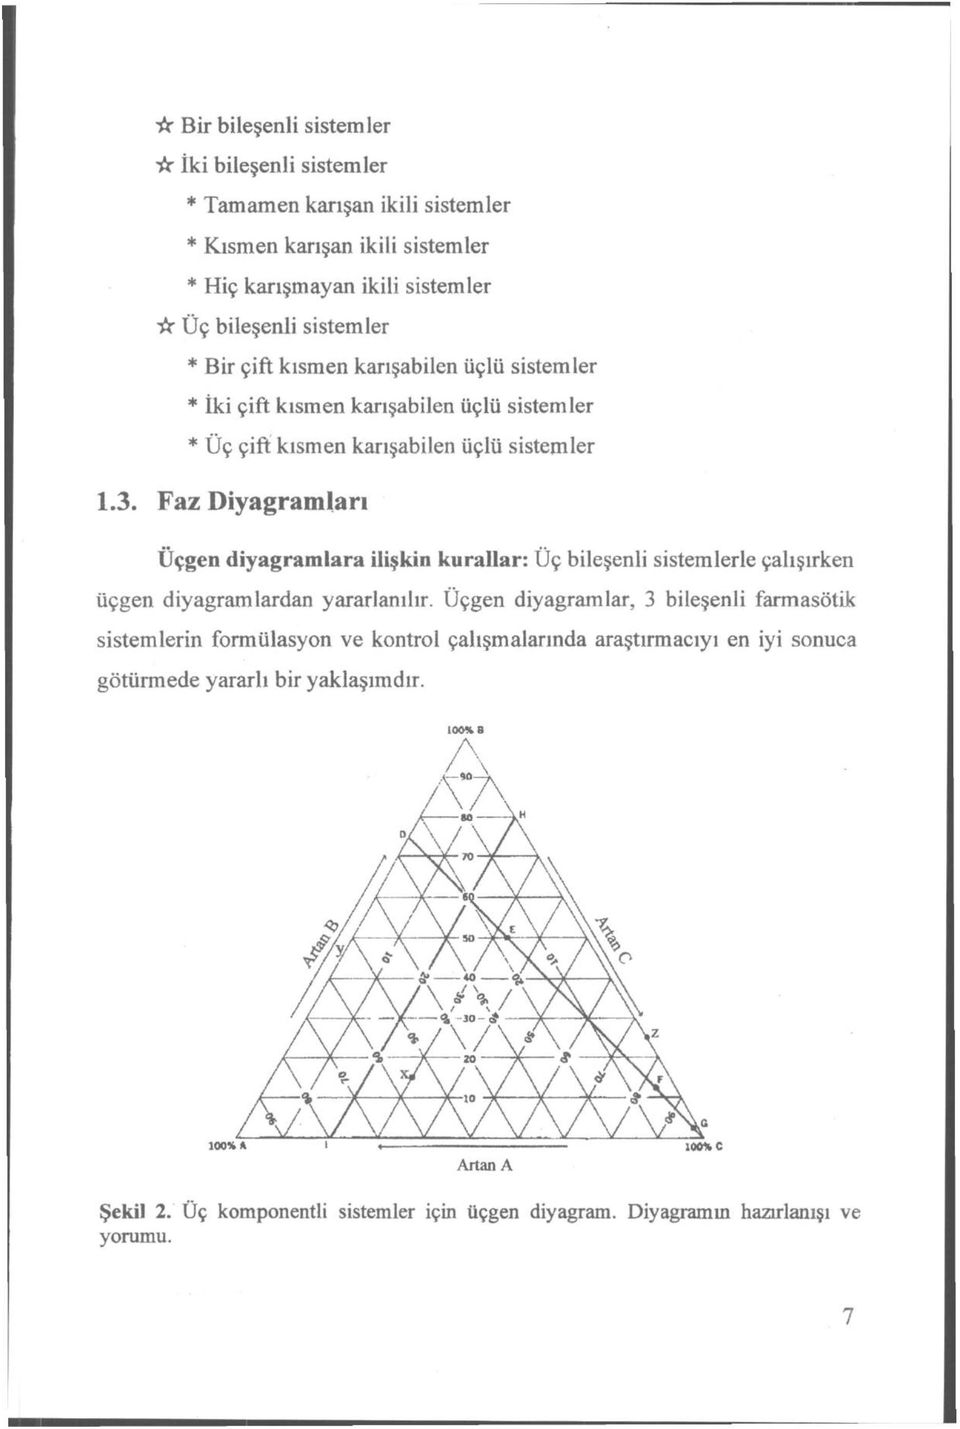 Faz Diyagramları Üçgen diyagramlara ilişkin kurallar: Üç bileşenli sistemlerle çalışırken üçgen diyagramlardan yararlanılır.